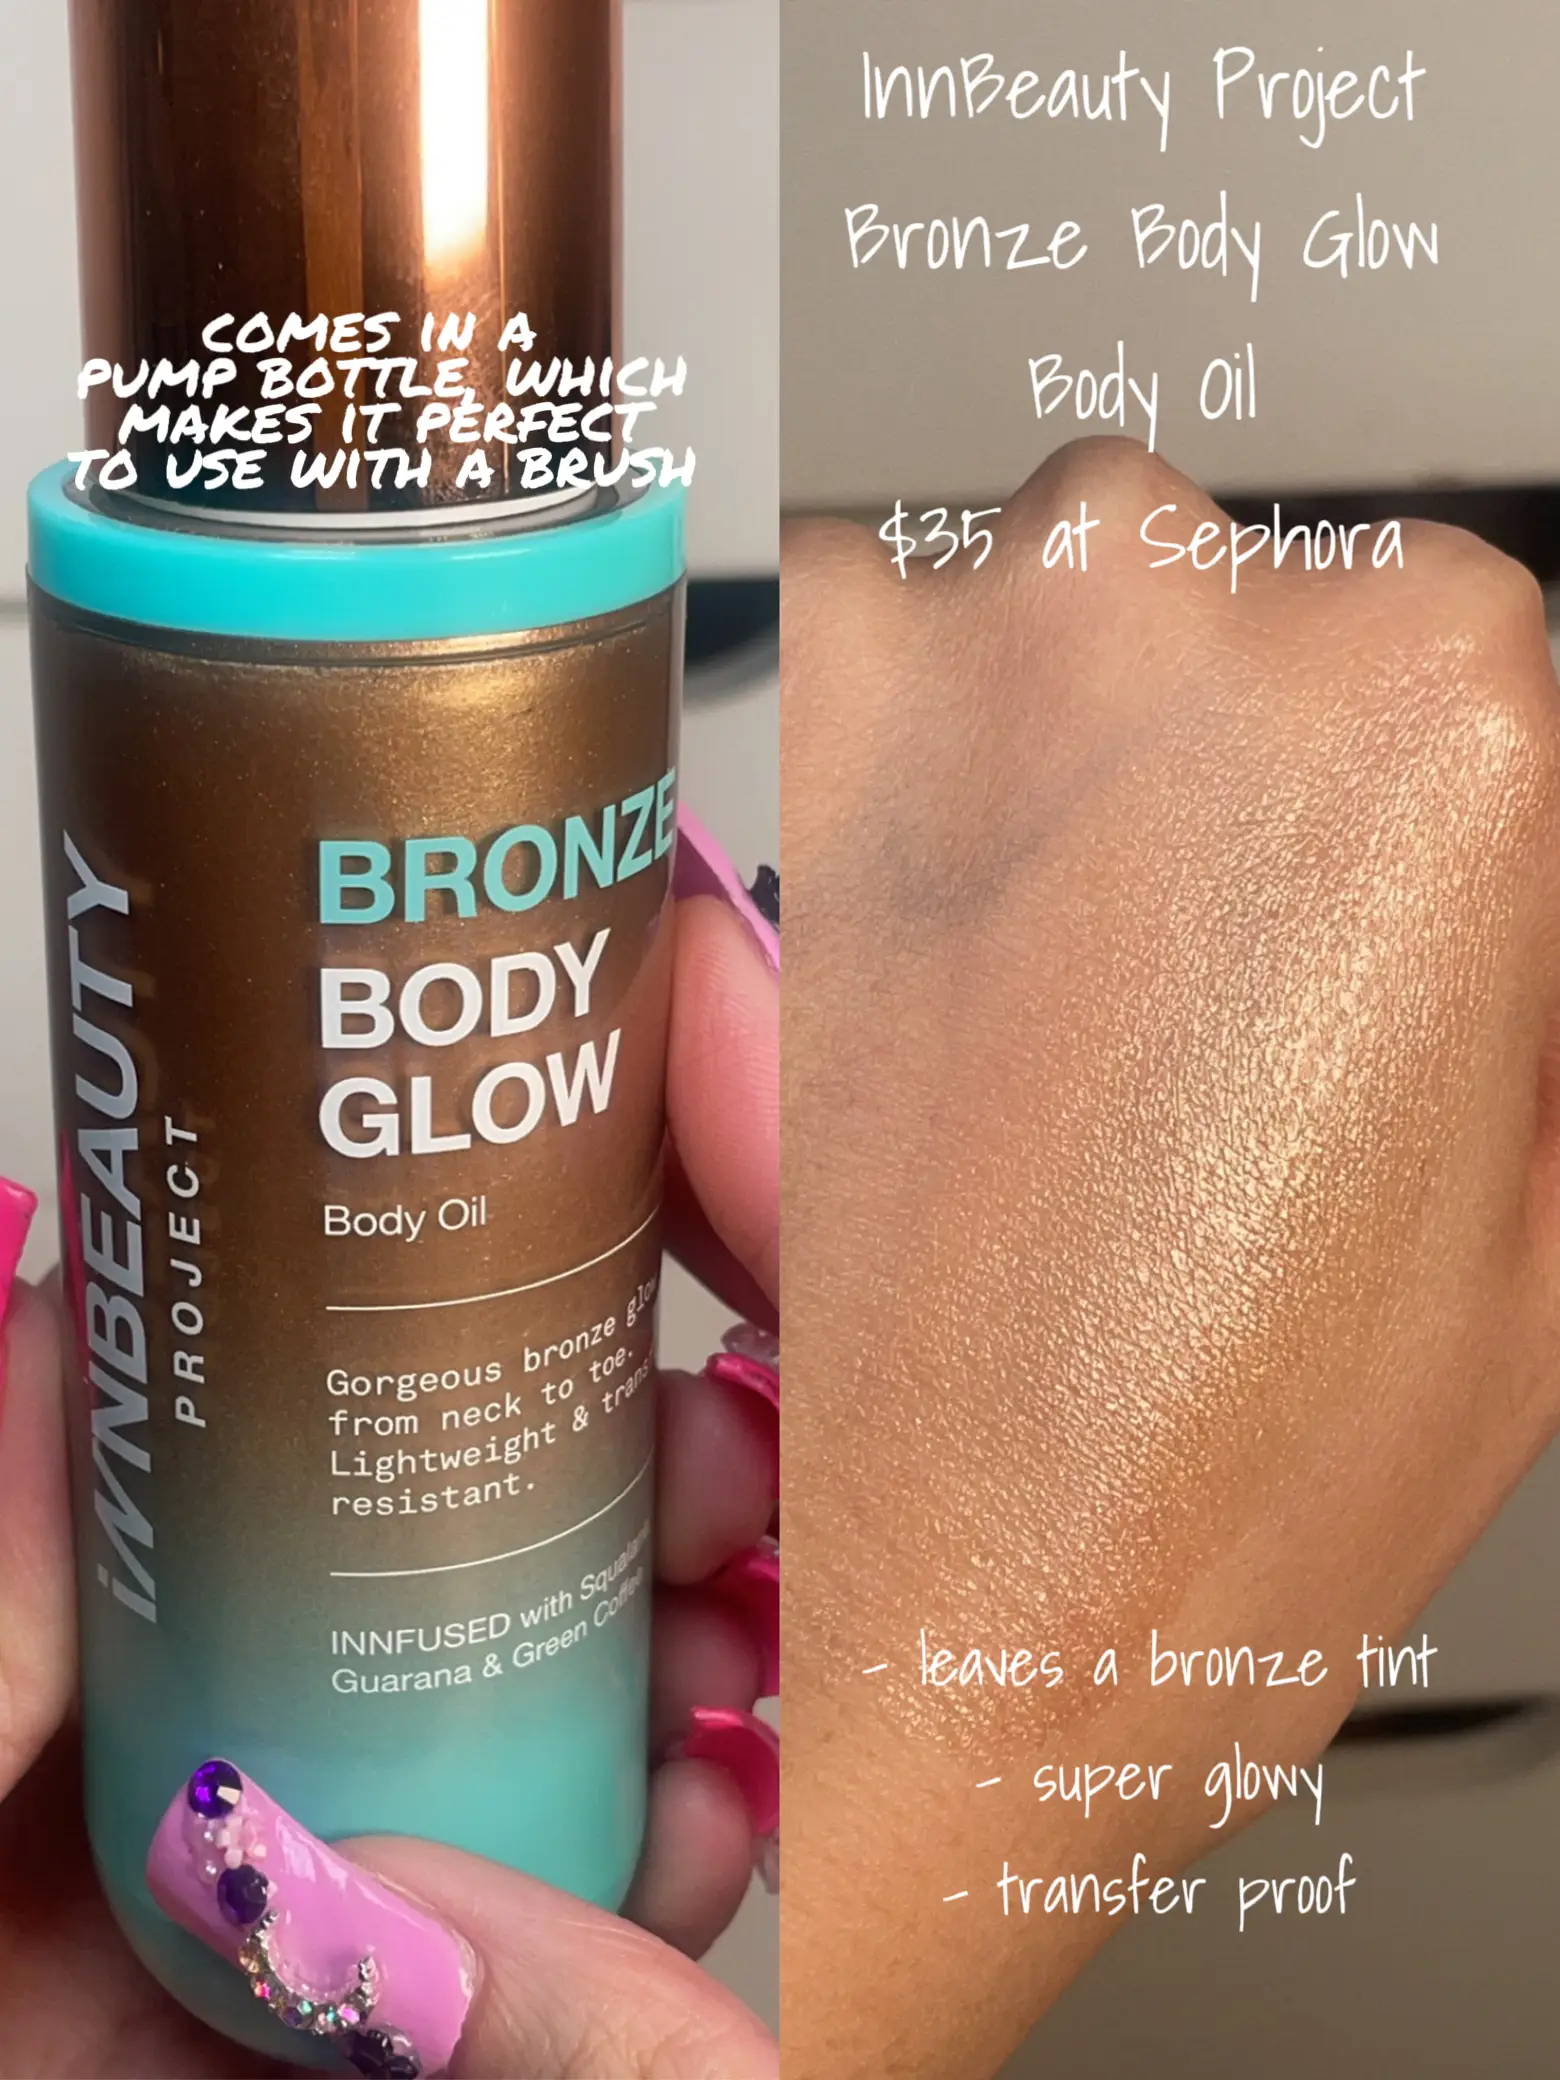 Bronze Body Glow Body Oil - Without Body Brush